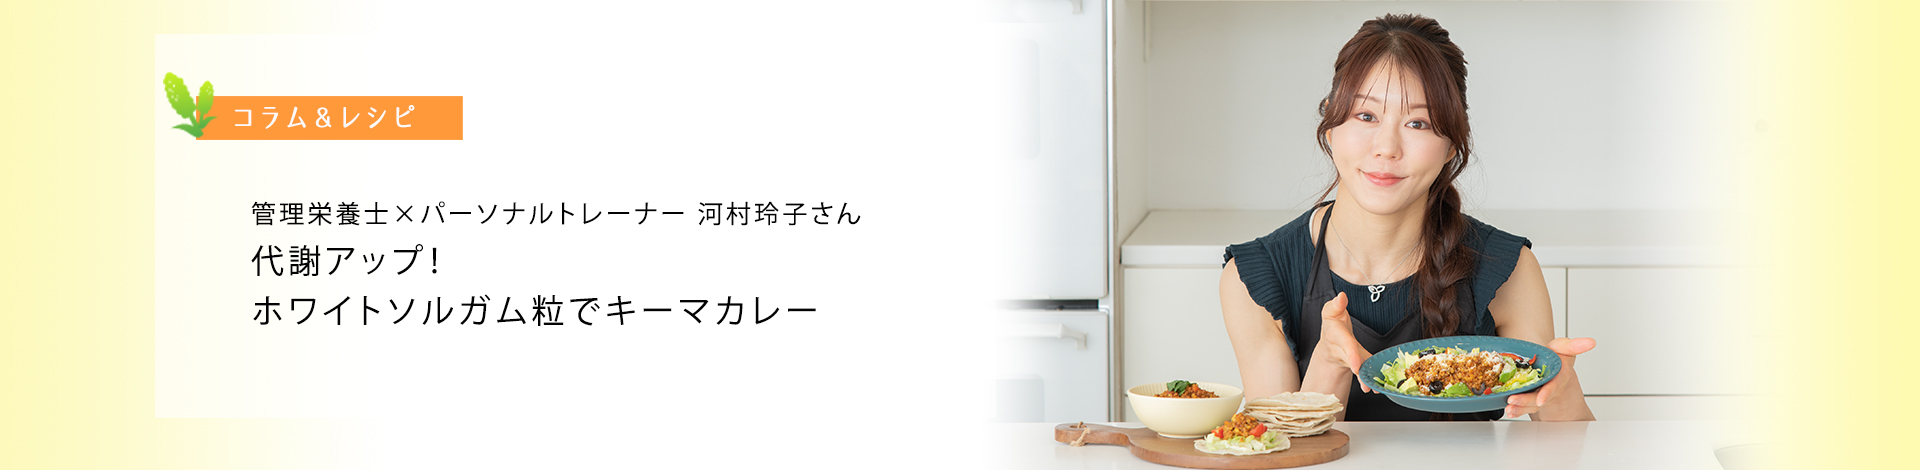 管理栄養士×パーソナルトレーナー 河村玲子さんのレシピ「代謝アップ！ホワイトソルガム粒でキーマカレー」